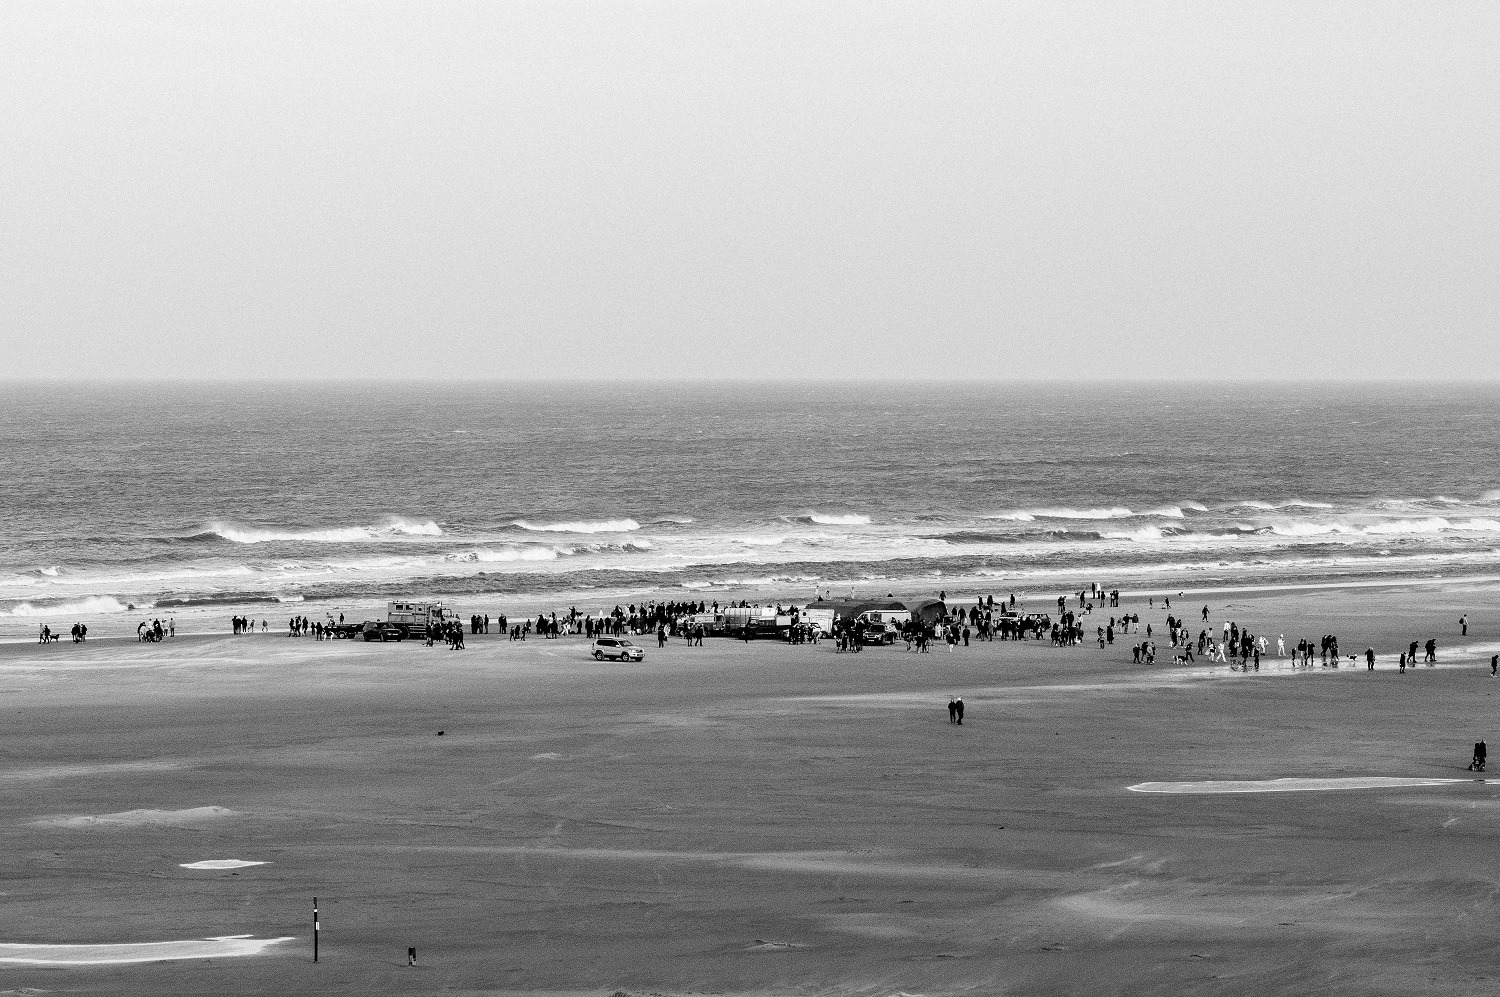 Strand van Midsland aan Zee met in de verte de Nieuwjaarsuik Terschelling gezien van het duin.